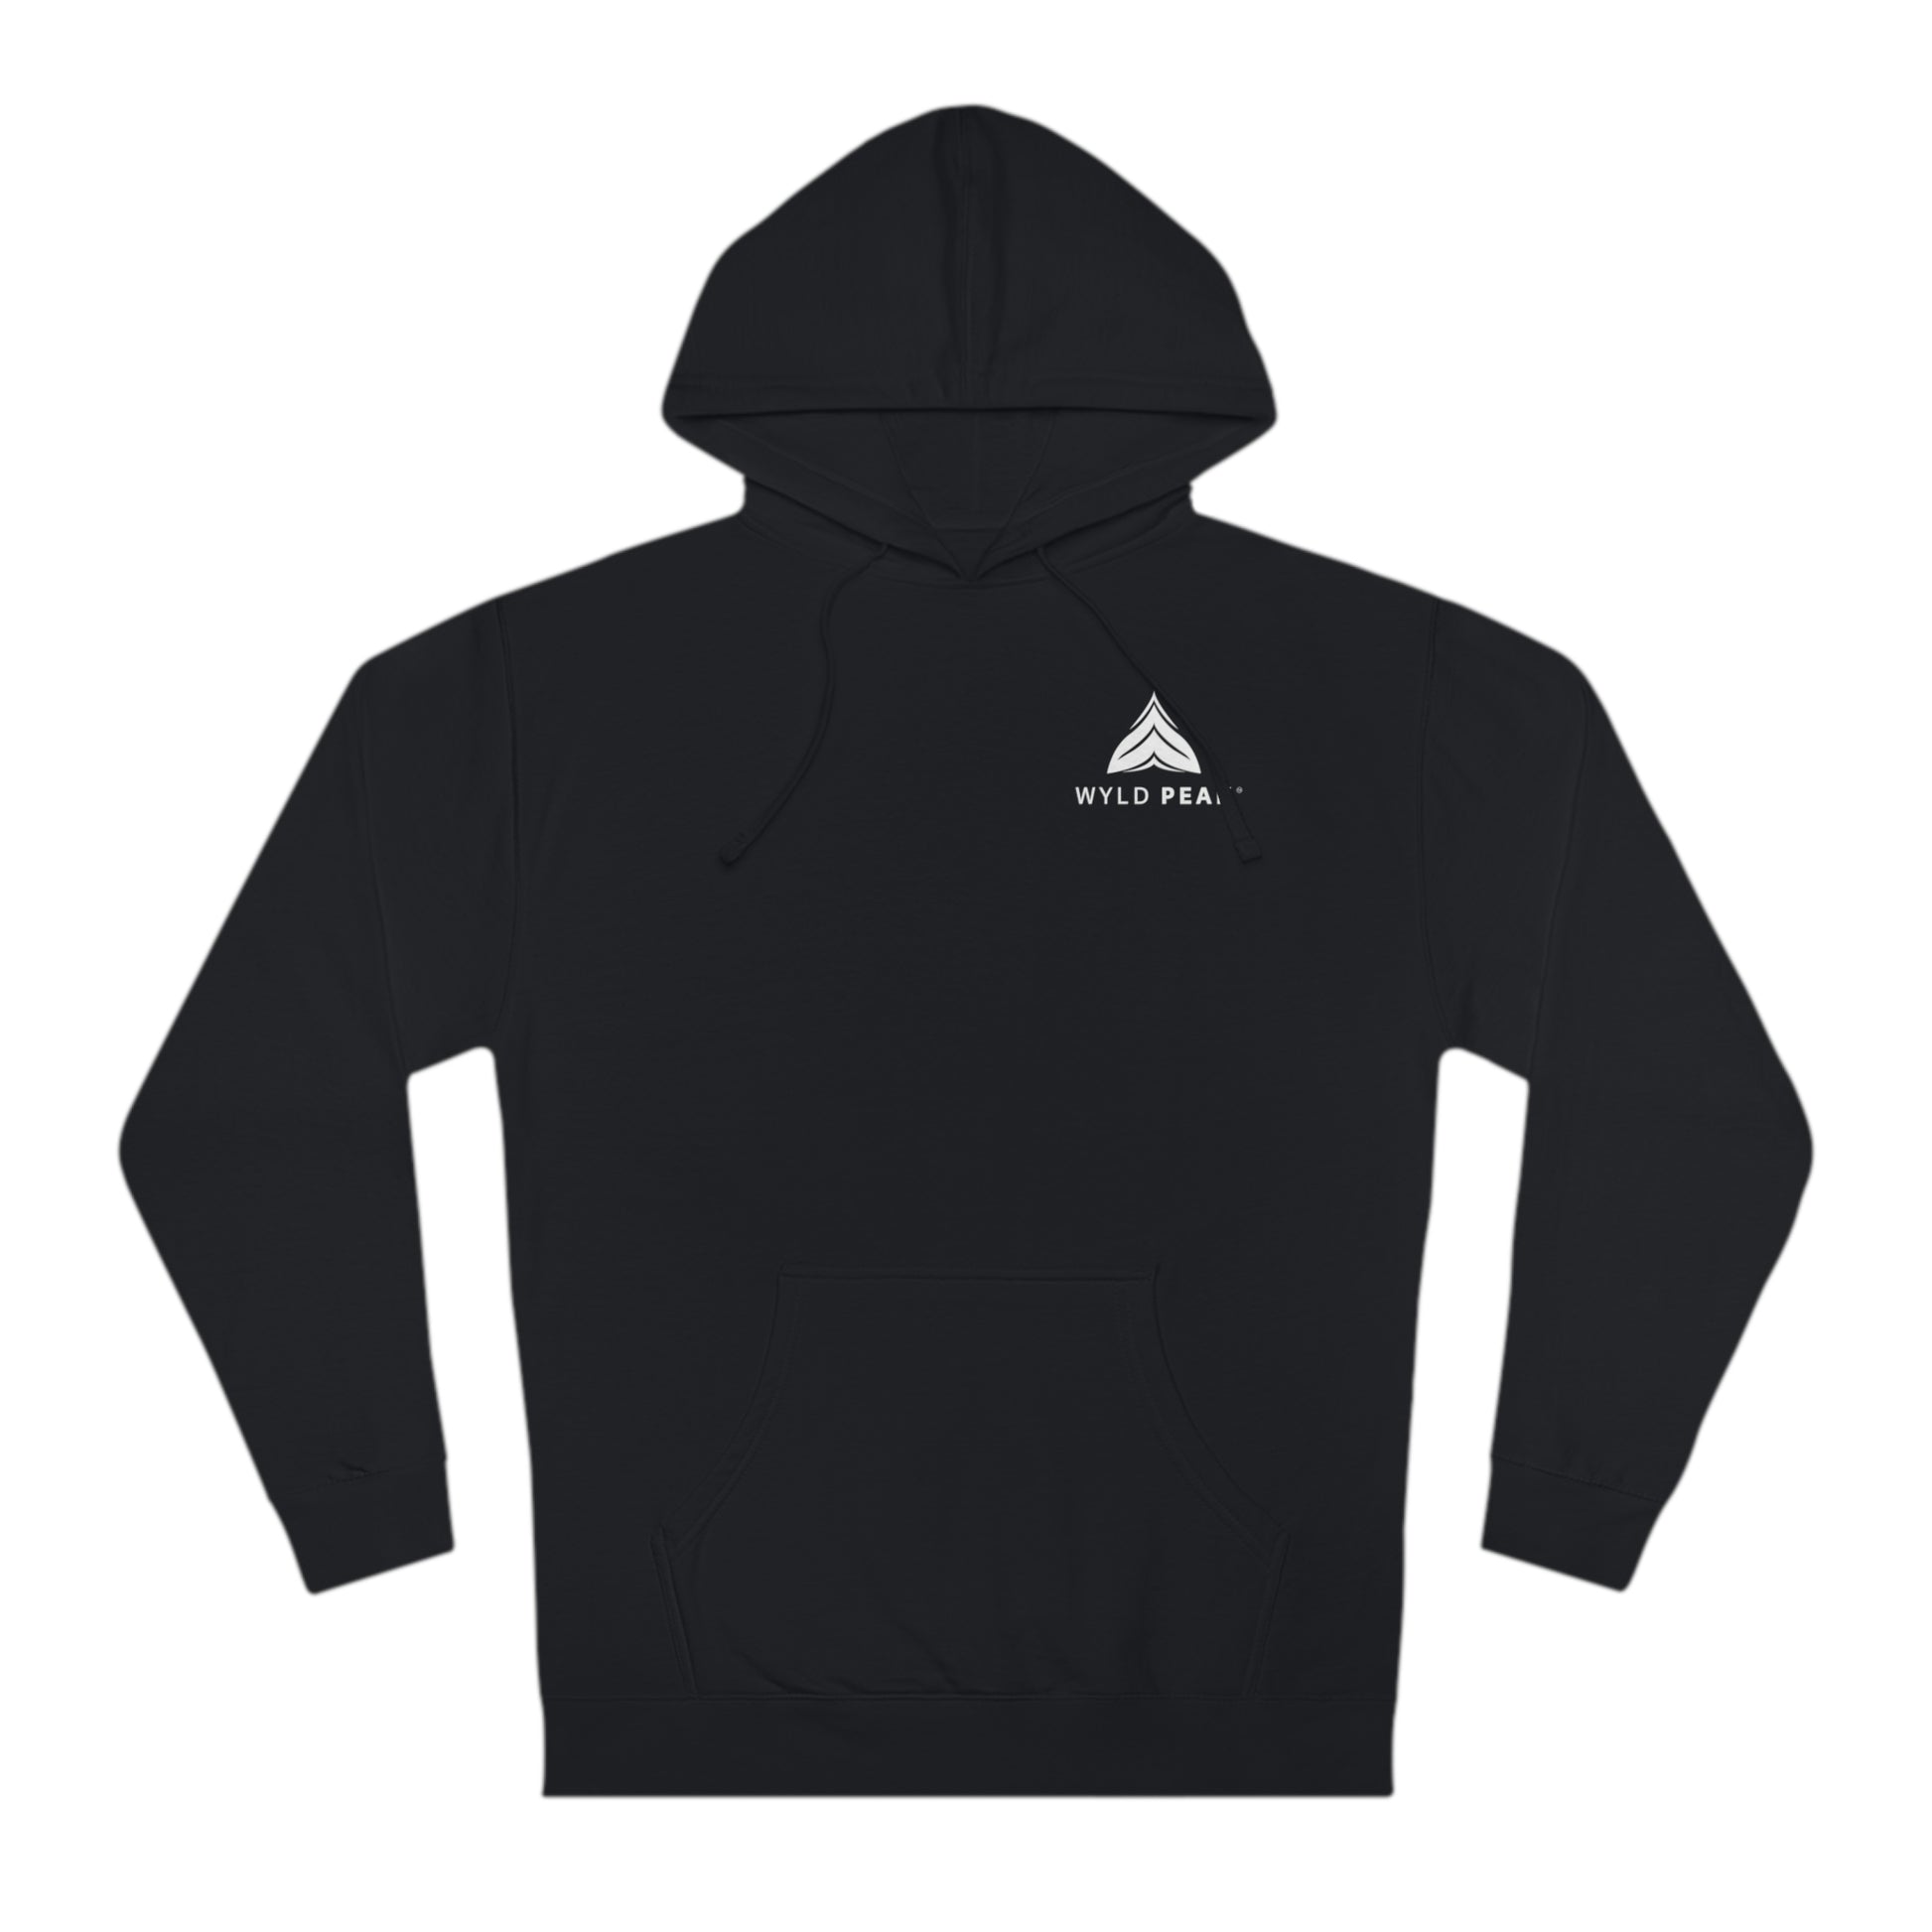 Unisex classic hooded sweatshirt hoodie in black